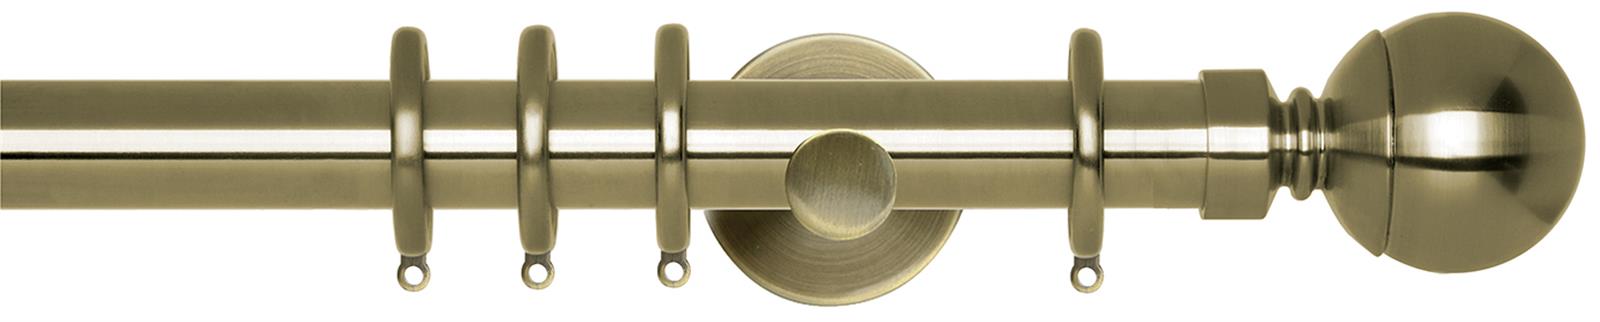 Neo 28mm Pole Spun Brass Cylinder Ball